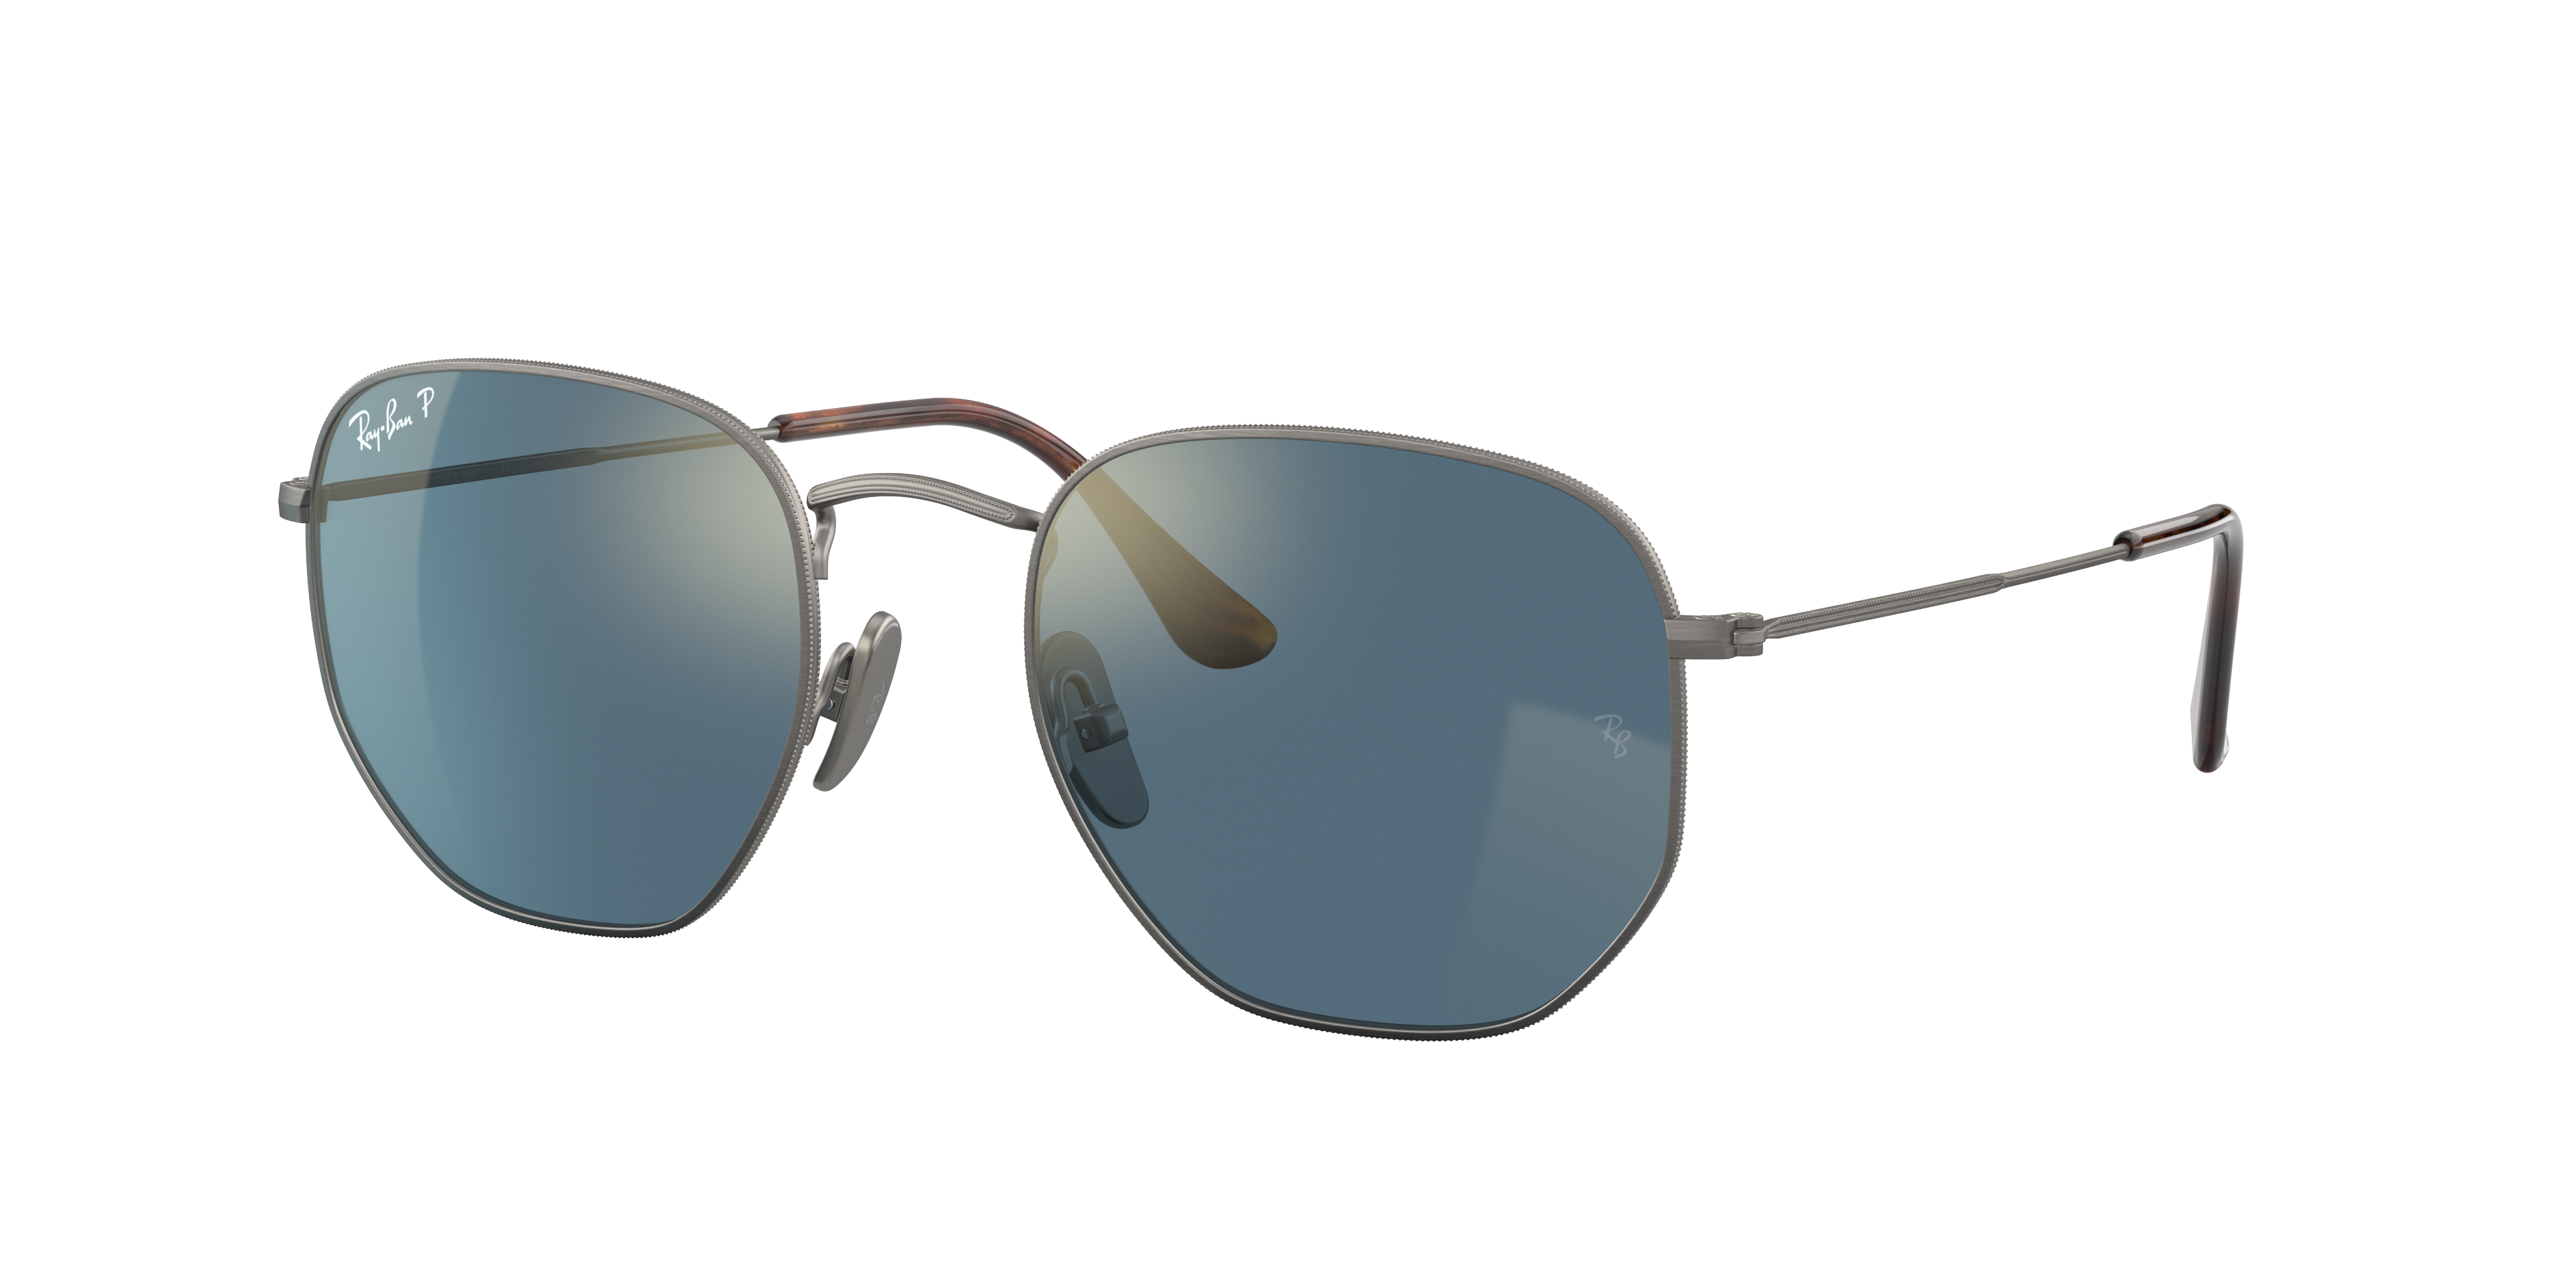 Oculos de Sol Ray Ban Sunglasses, coleção completa com milhares de modelos de óculos de sol de diferentes estilos para você escolher.